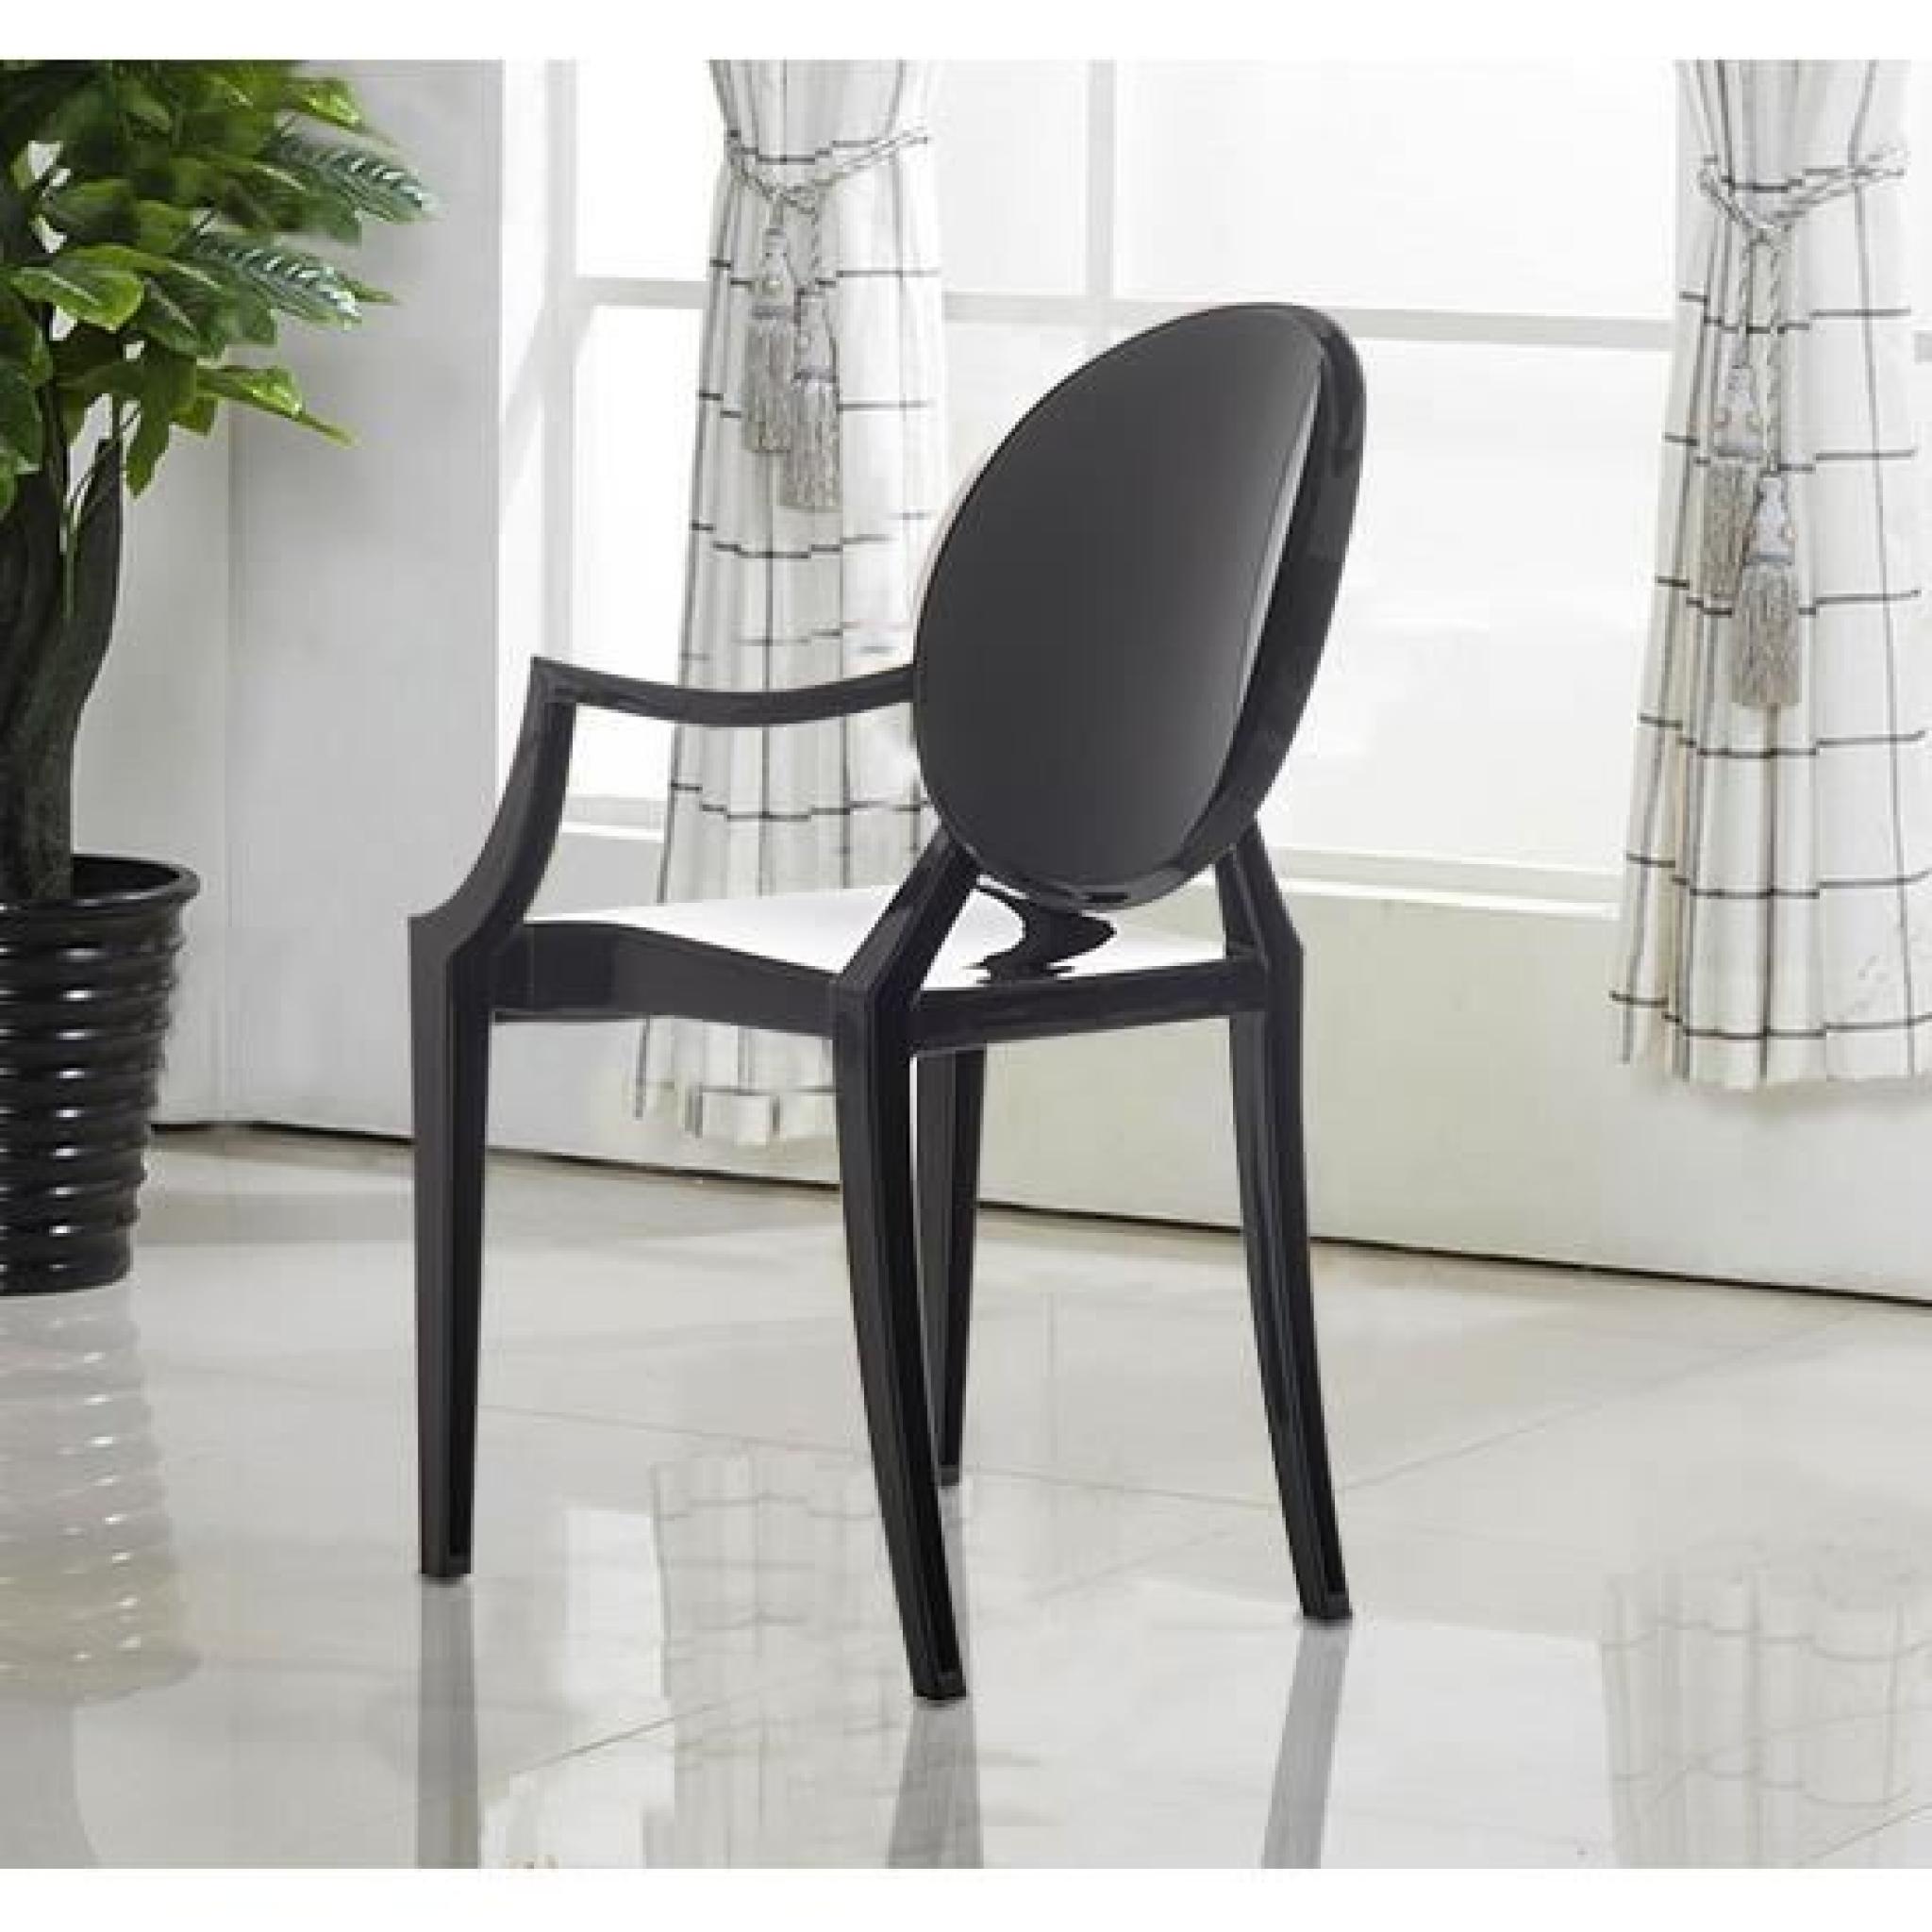 2/set Ghost Chaise avec accoudoirs dossier chaise de cuisine table à manger bureau chambre chaise de jardin meuble noir neuf 01BK